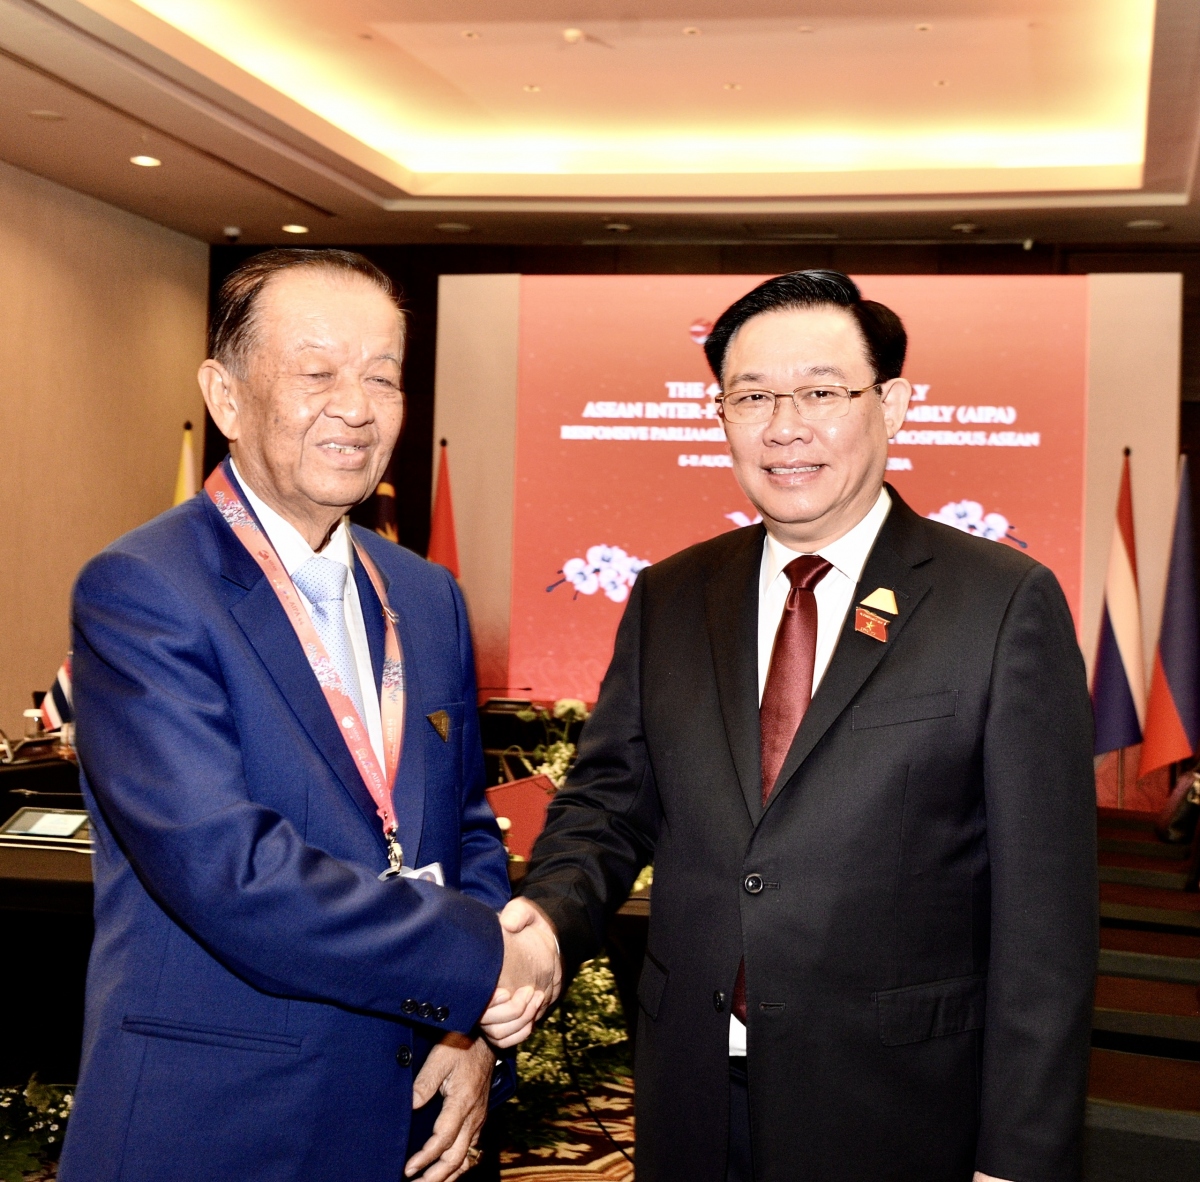 Chủ tịch Quốc hội Vương Đình Huệ gặp Chủ tịch Hạ viện Thái Lan